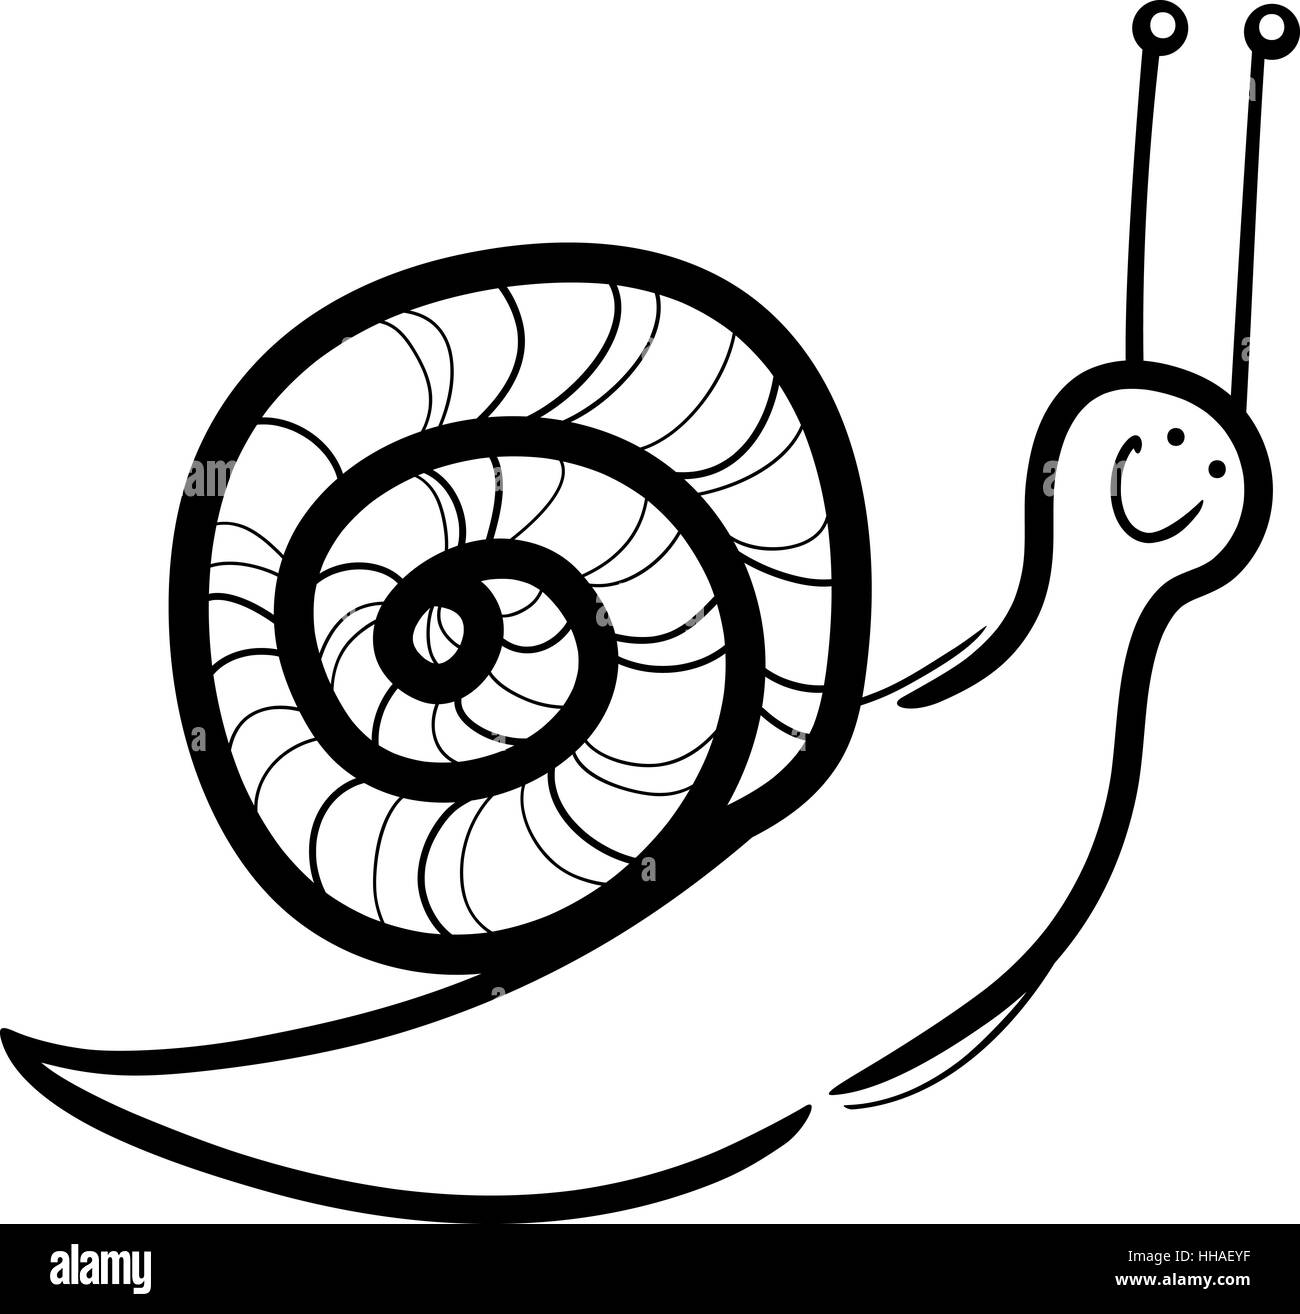 Cartoon illustration d'escargot mignon avec shell pour la coloration Banque D'Images